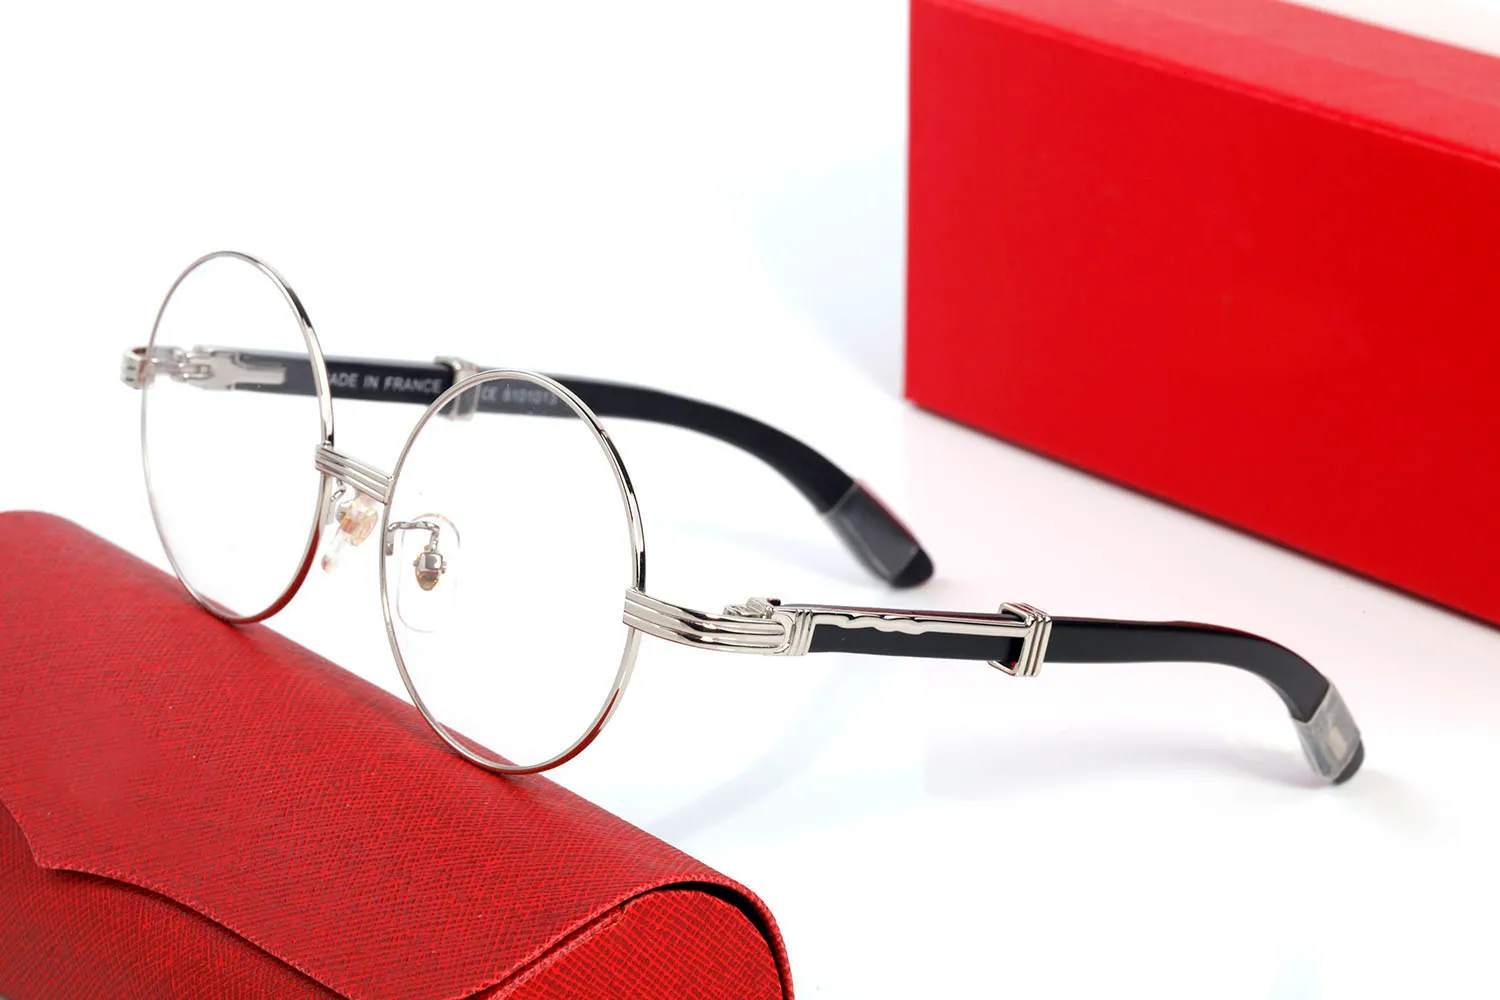 Круглые солнцезащитные очки дизайн бренда Uv400 Овер Metal Gold Rade Sun Glasses Мужчины женские унисекс буффало роговые очки черные коричневые линзы1975